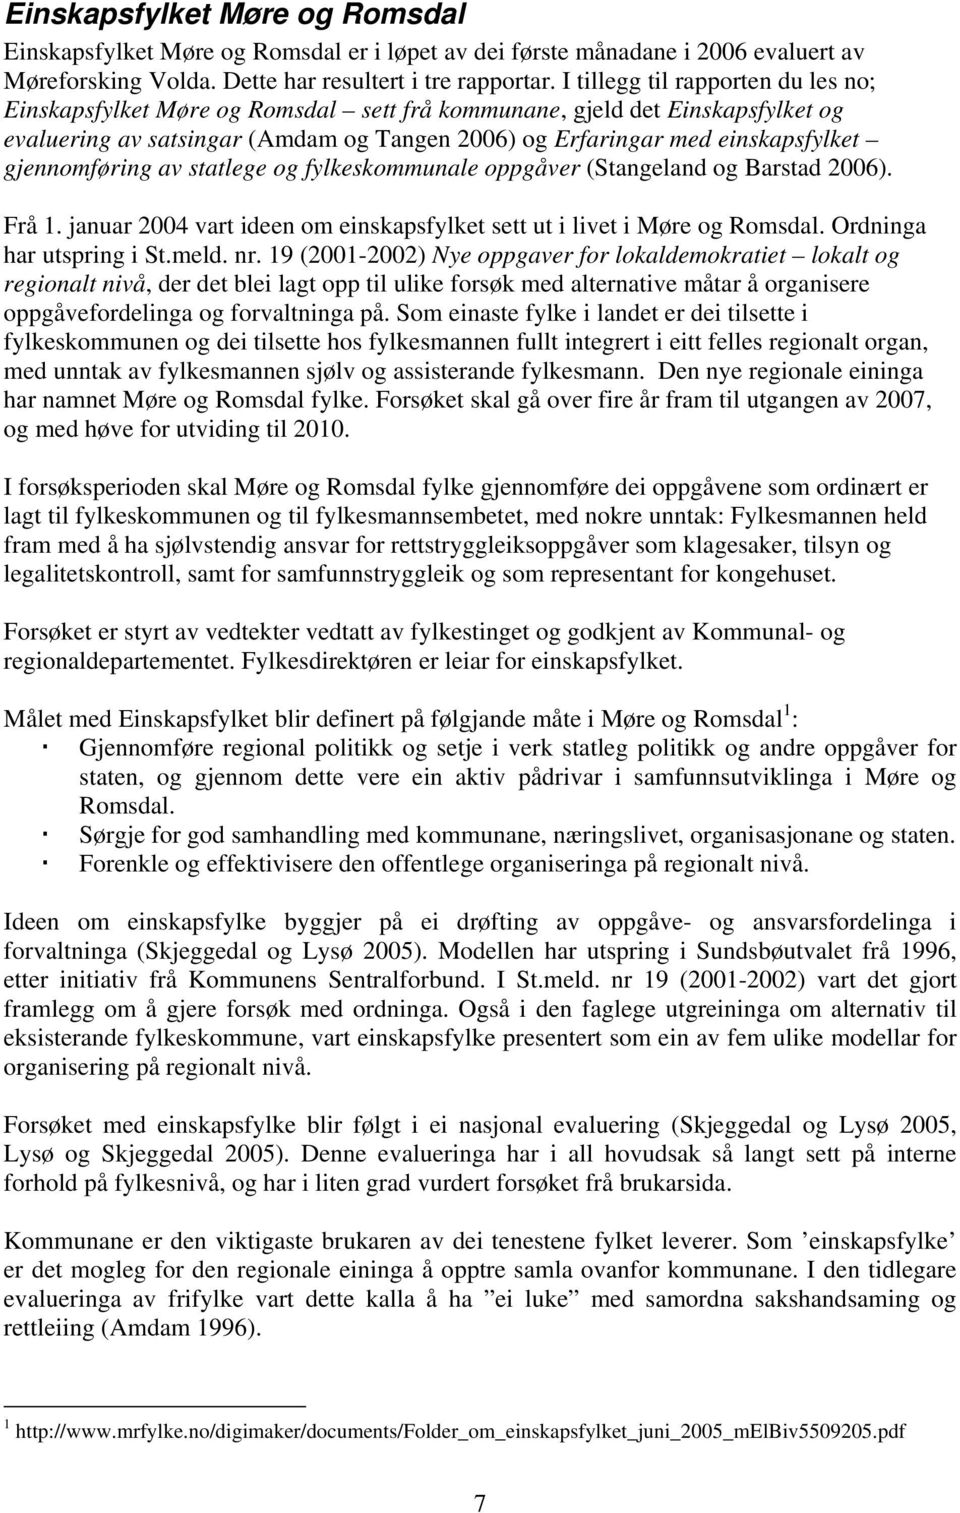 gjennomføring av statlege og fylkeskommunale oppgåver (Stangeland og Barstad 2006). Frå 1. januar 2004 vart ideen om einskapsfylket sett ut i livet i Møre og Romsdal. Ordninga har utspring i St.meld.